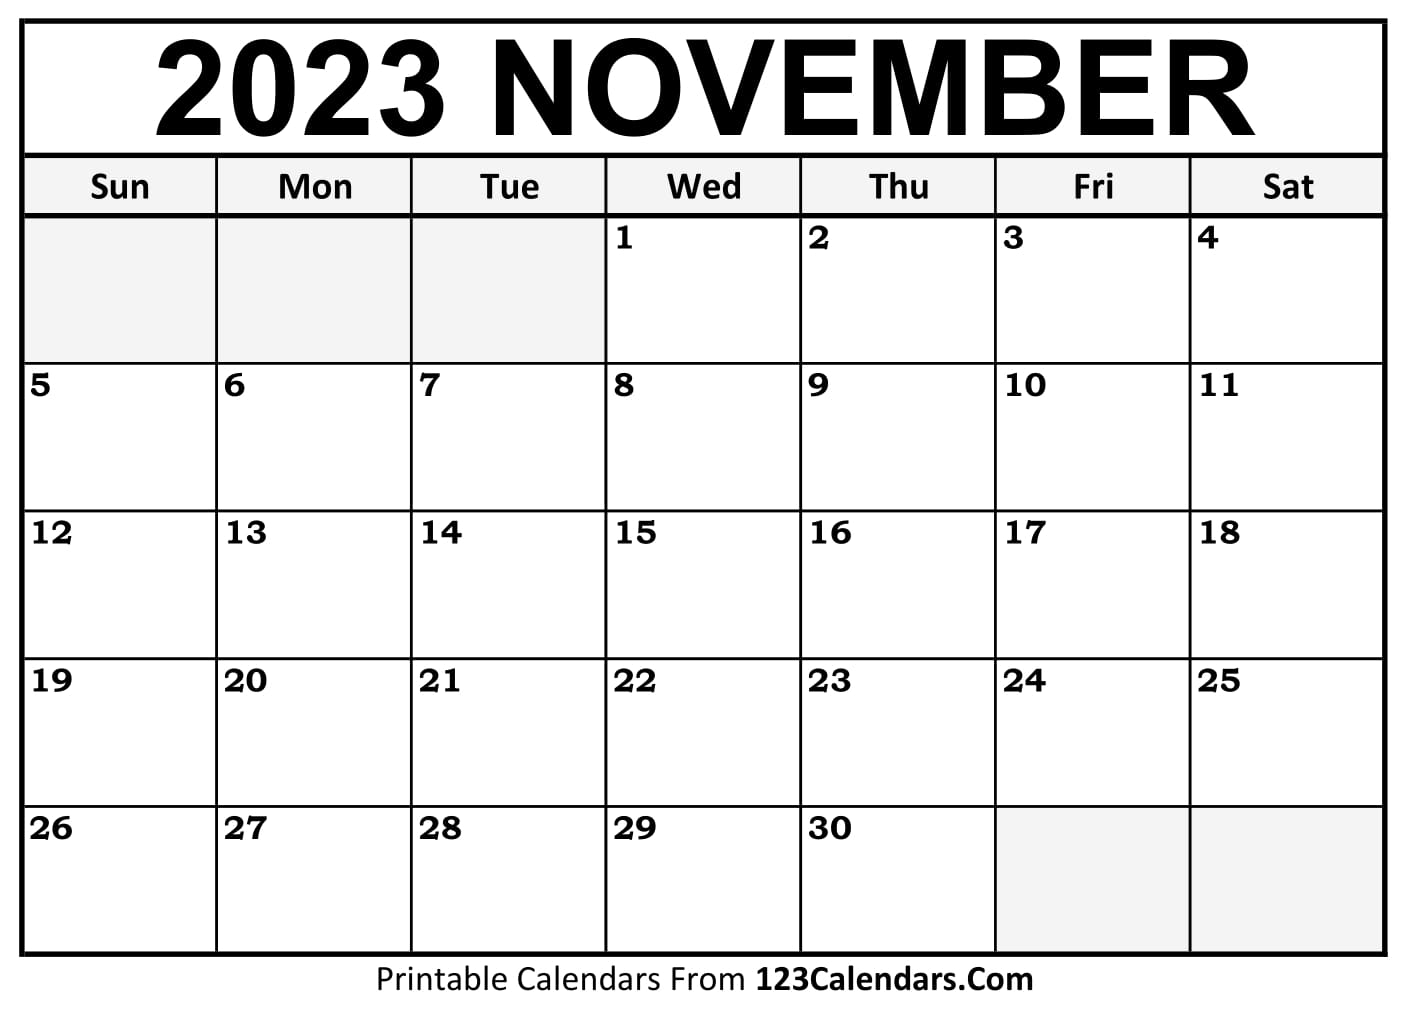 Printable November 2023 Calendar Templates - 123Calendars.com